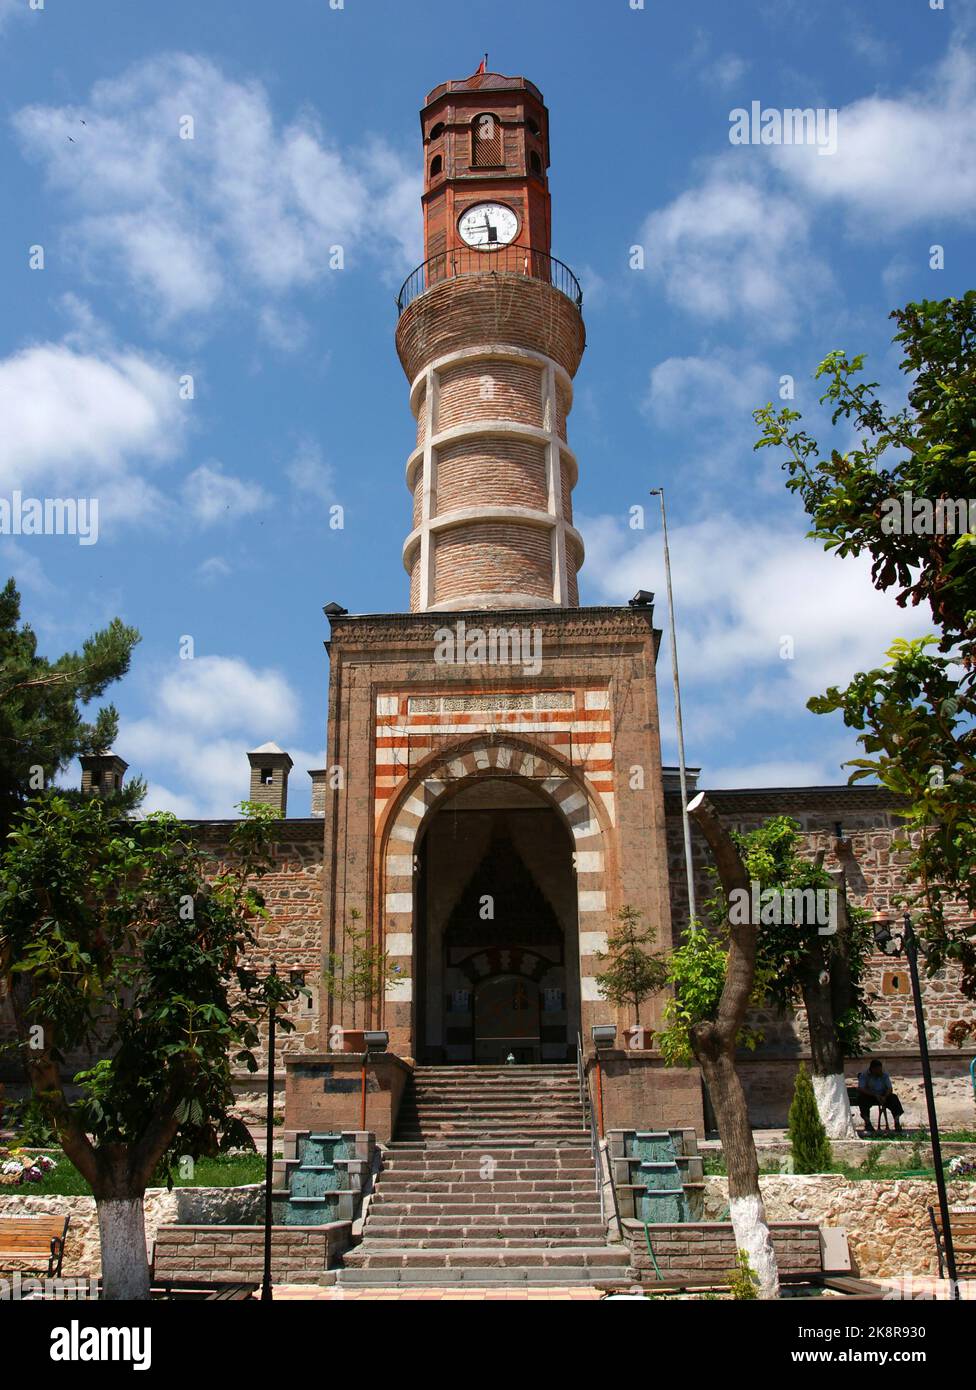 La Torre del Reloj, situada en la ciudad de Merzifon en Turquía, fue construida en 1866. Foto de stock